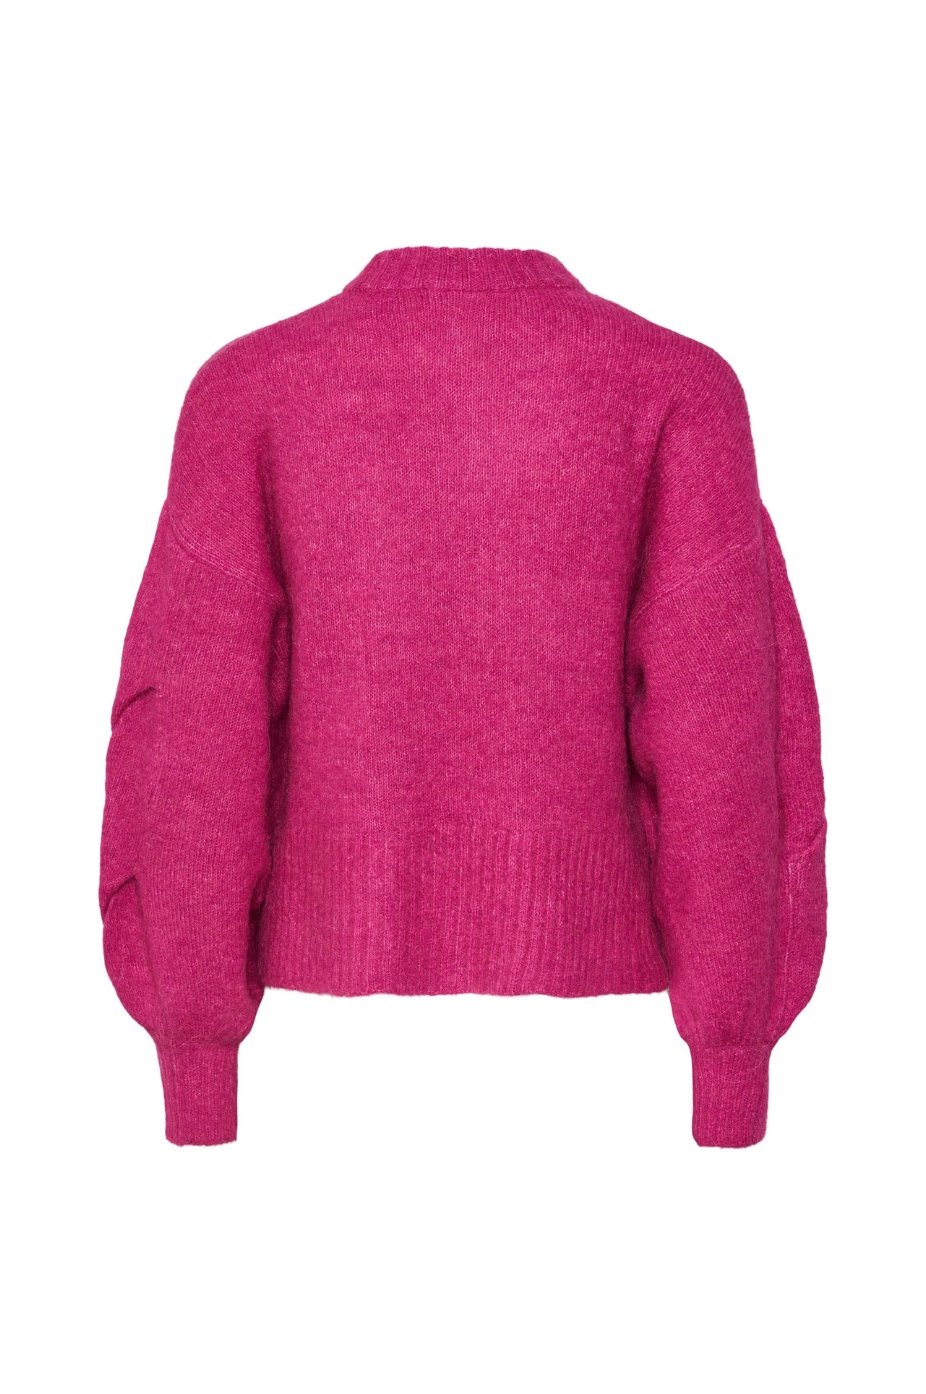 Yaslexu Knit Sweater Rose Violet Pink Yas - Product - Sienna Goodies